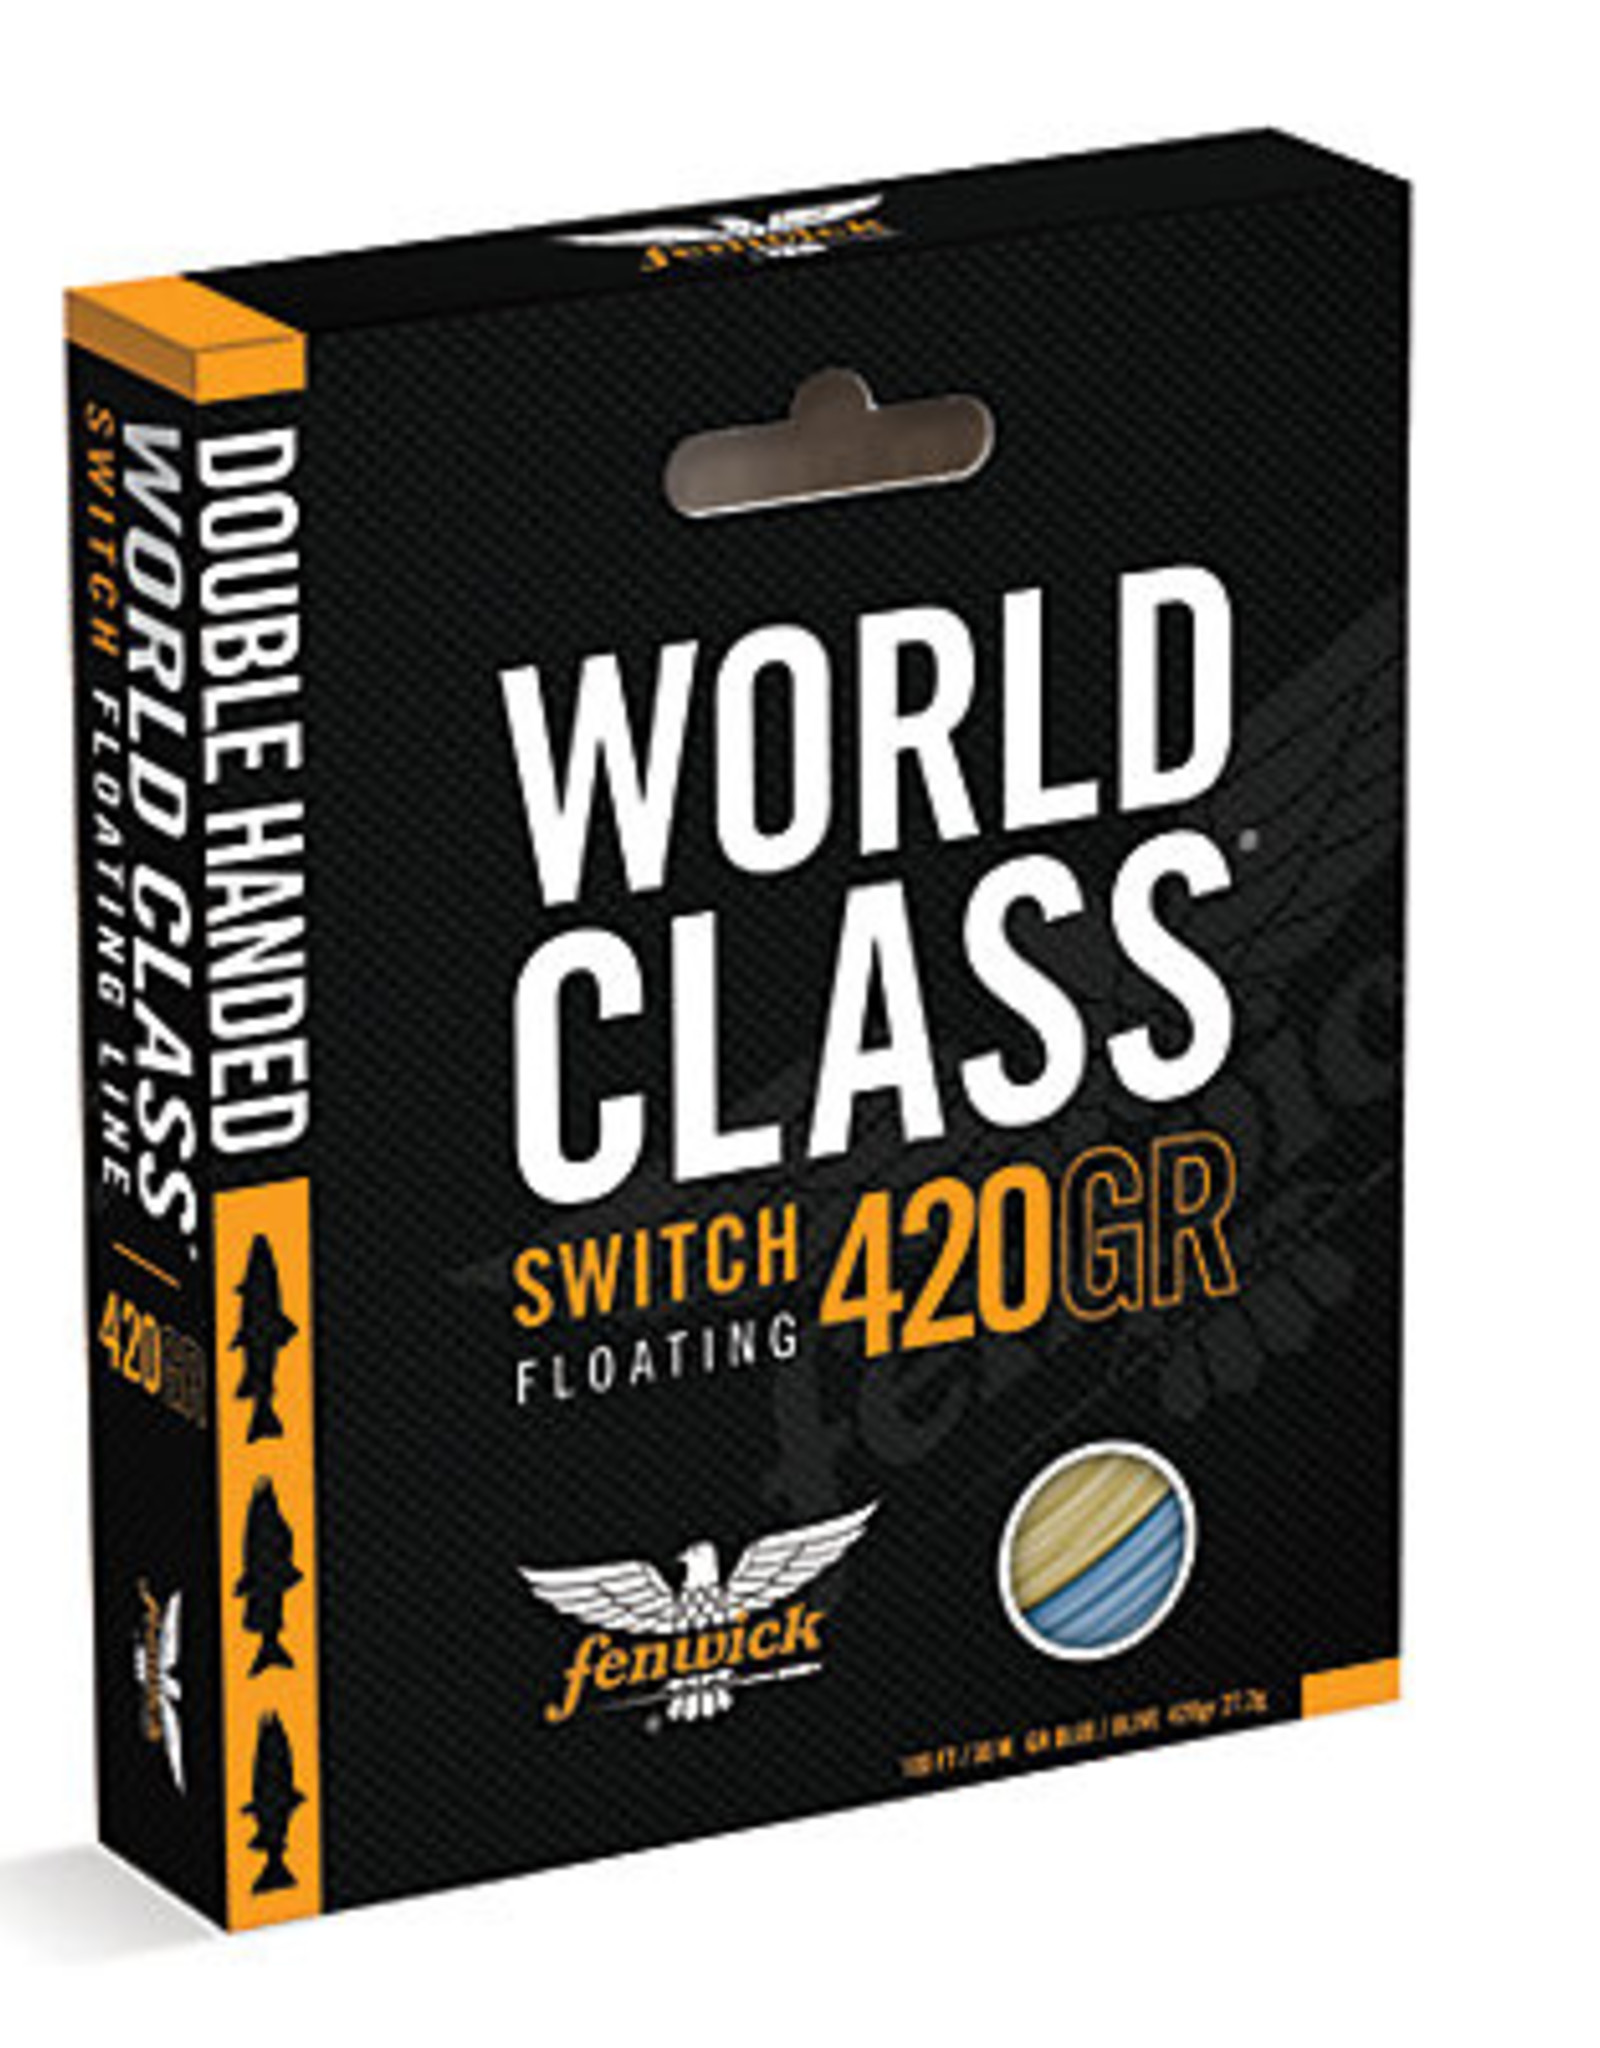 Fenwick Fenwick World Class Switch Shooting head